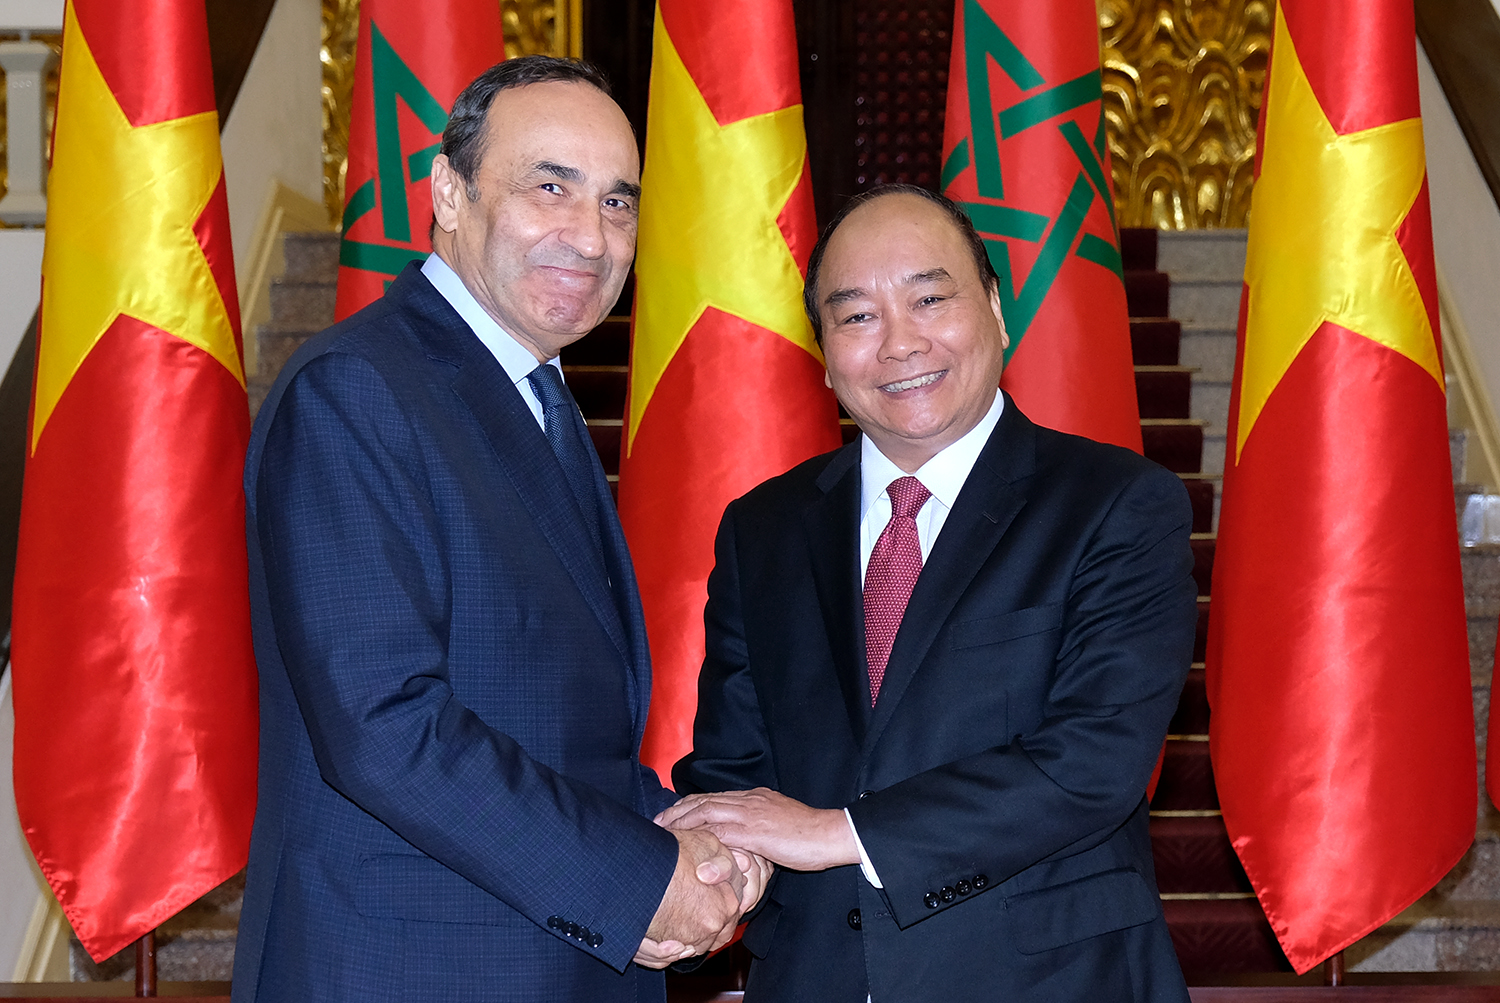 Tiếp Chủ tịch Hạ viện Morocco: Việc tiếp đón chủ tịch Hạ viện Morocco tại Việt Nam là một cơ hội để thúc đẩy mối quan hệ giữa hai nước. Việc thúc đẩy các hoạt động giao lưu văn hóa, thúc đẩy hợp tác kinh tế và thương mại là một lợi ích lớn cho cả hai bên. Đây là một cơ hội để tăng cường sự hiểu biết và tạo ra mối quan hệ trường tồn giữa hai nước.